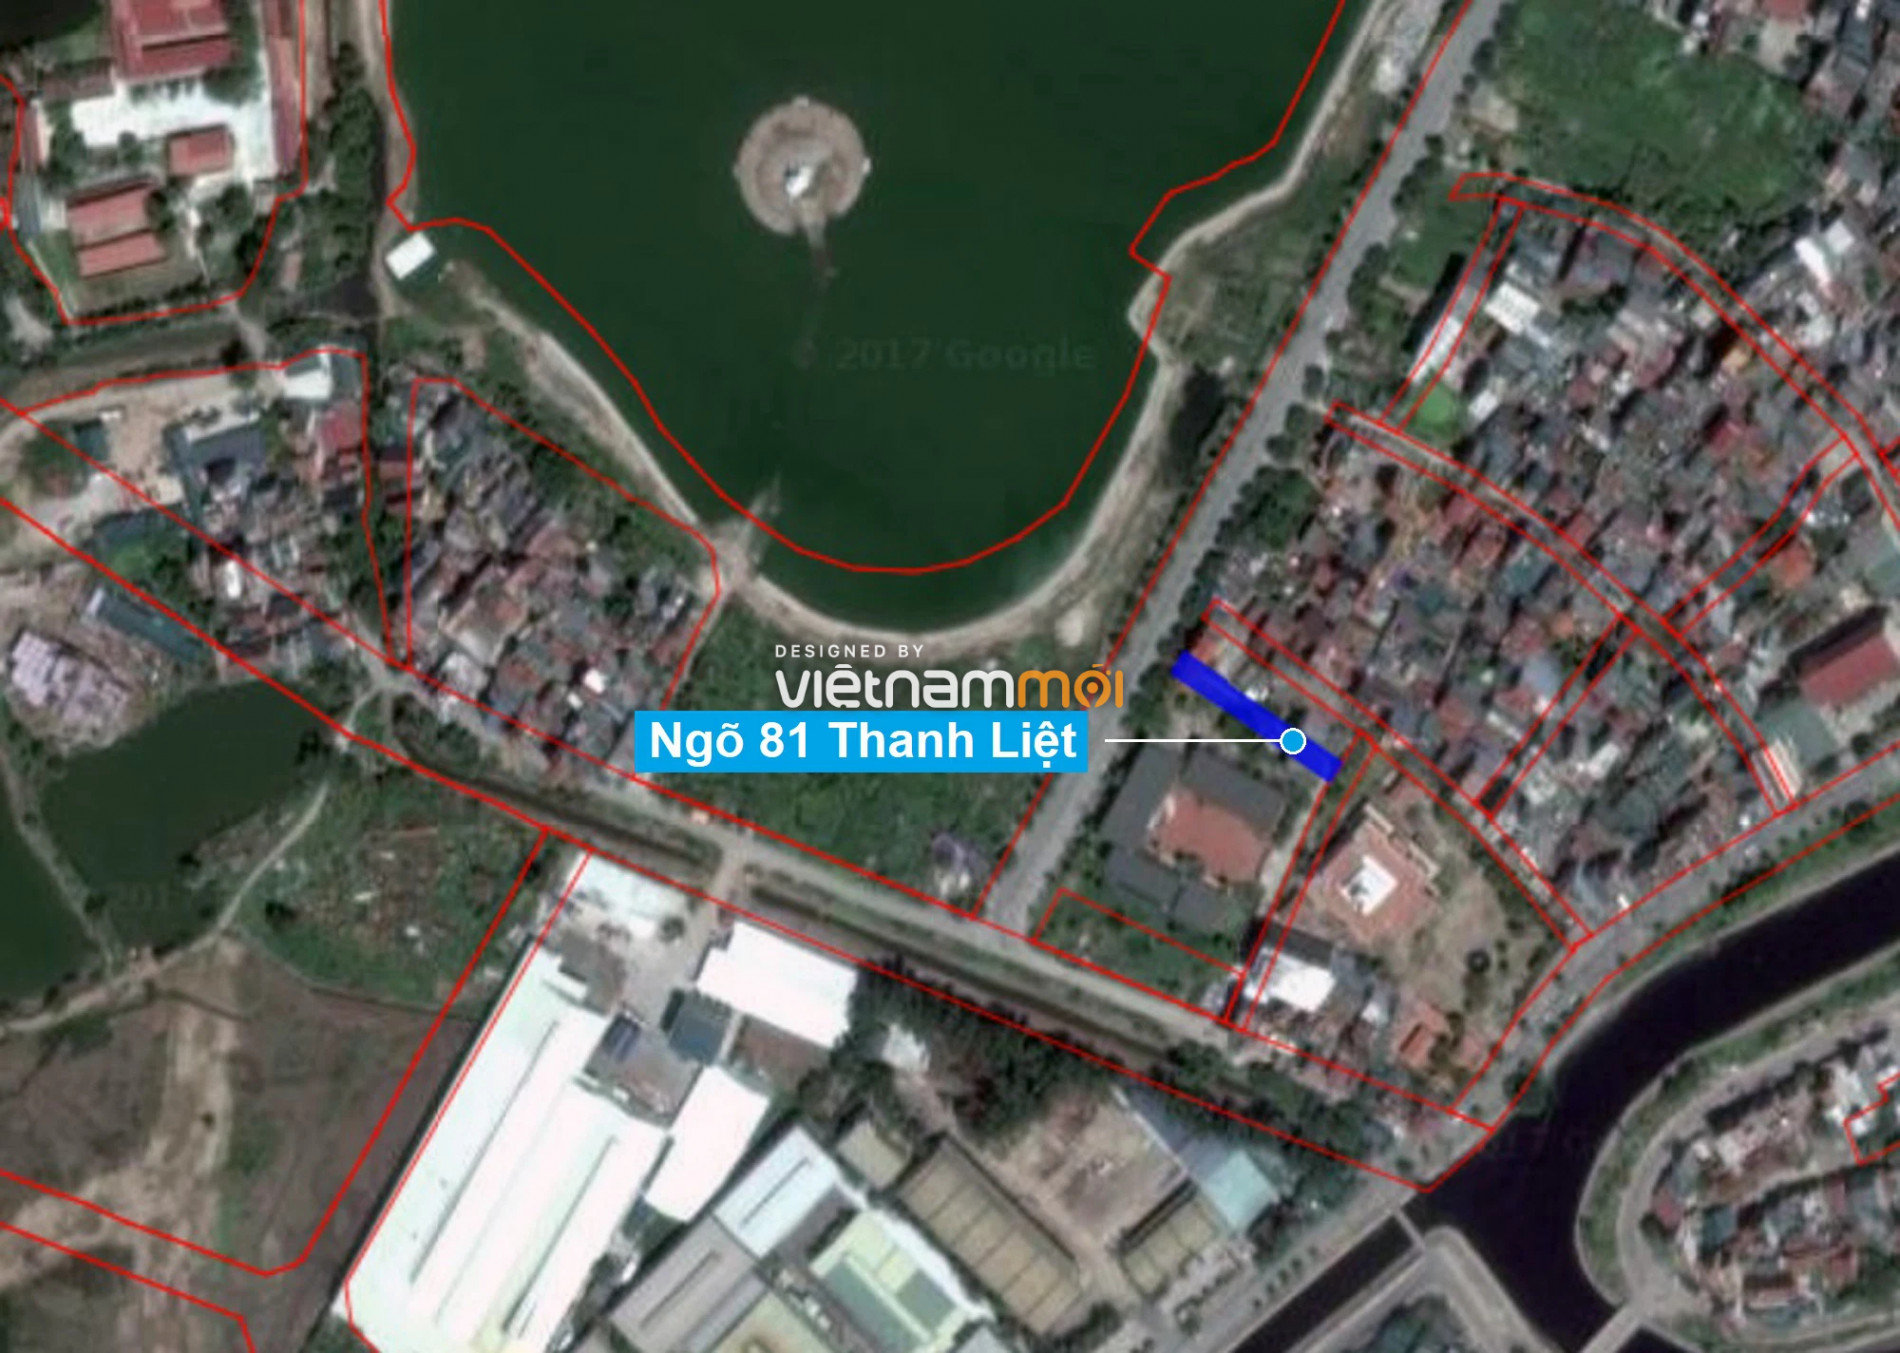 Những khu đất sắp thu hồi để mở đường ở xã Thanh Liệt, Thanh Trì, Hà Nội (phần 7) - Ảnh 8.